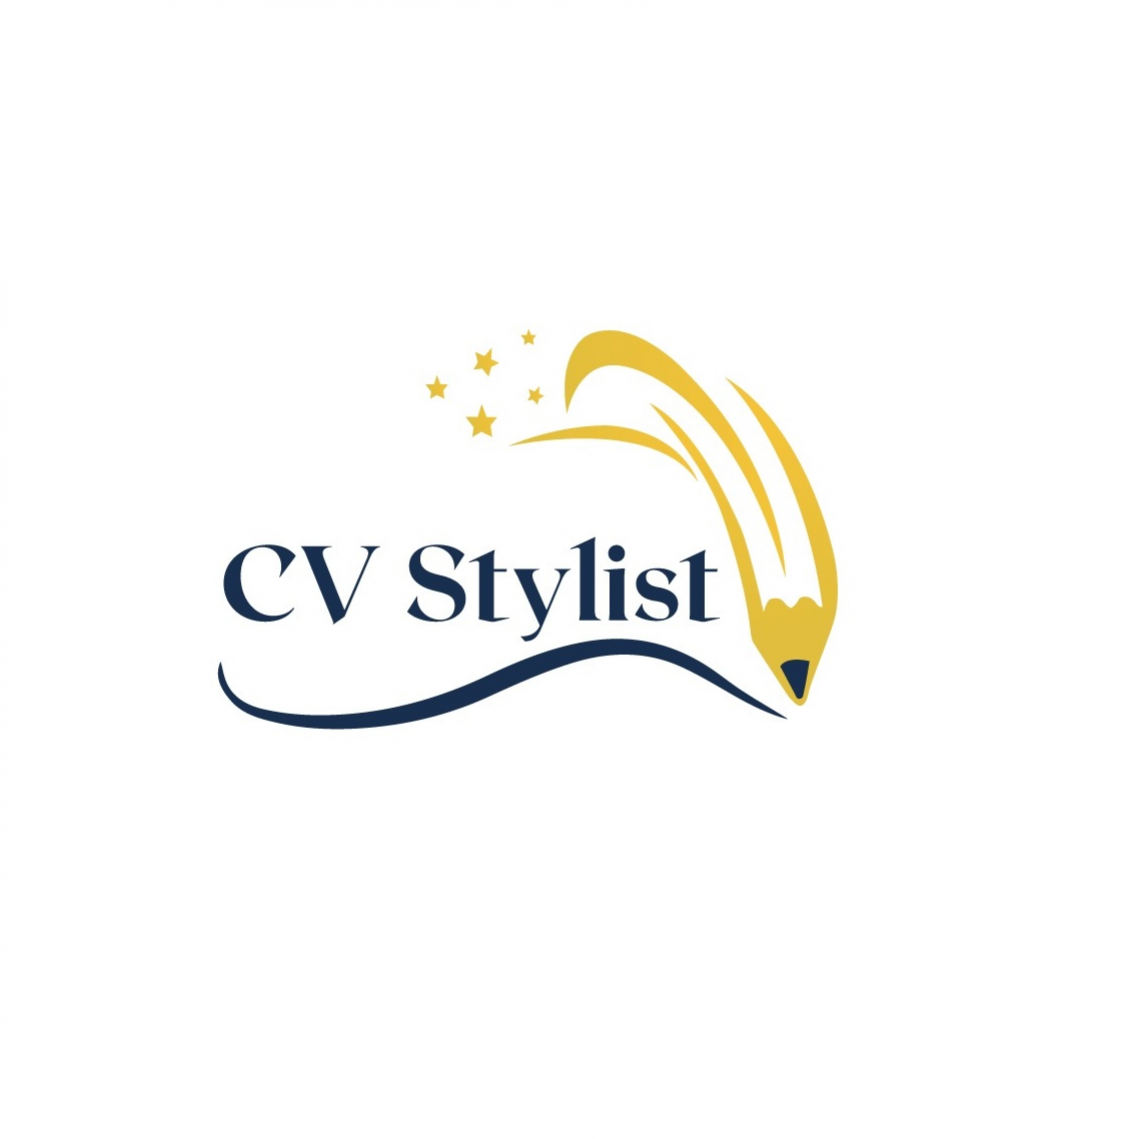 CVStylist